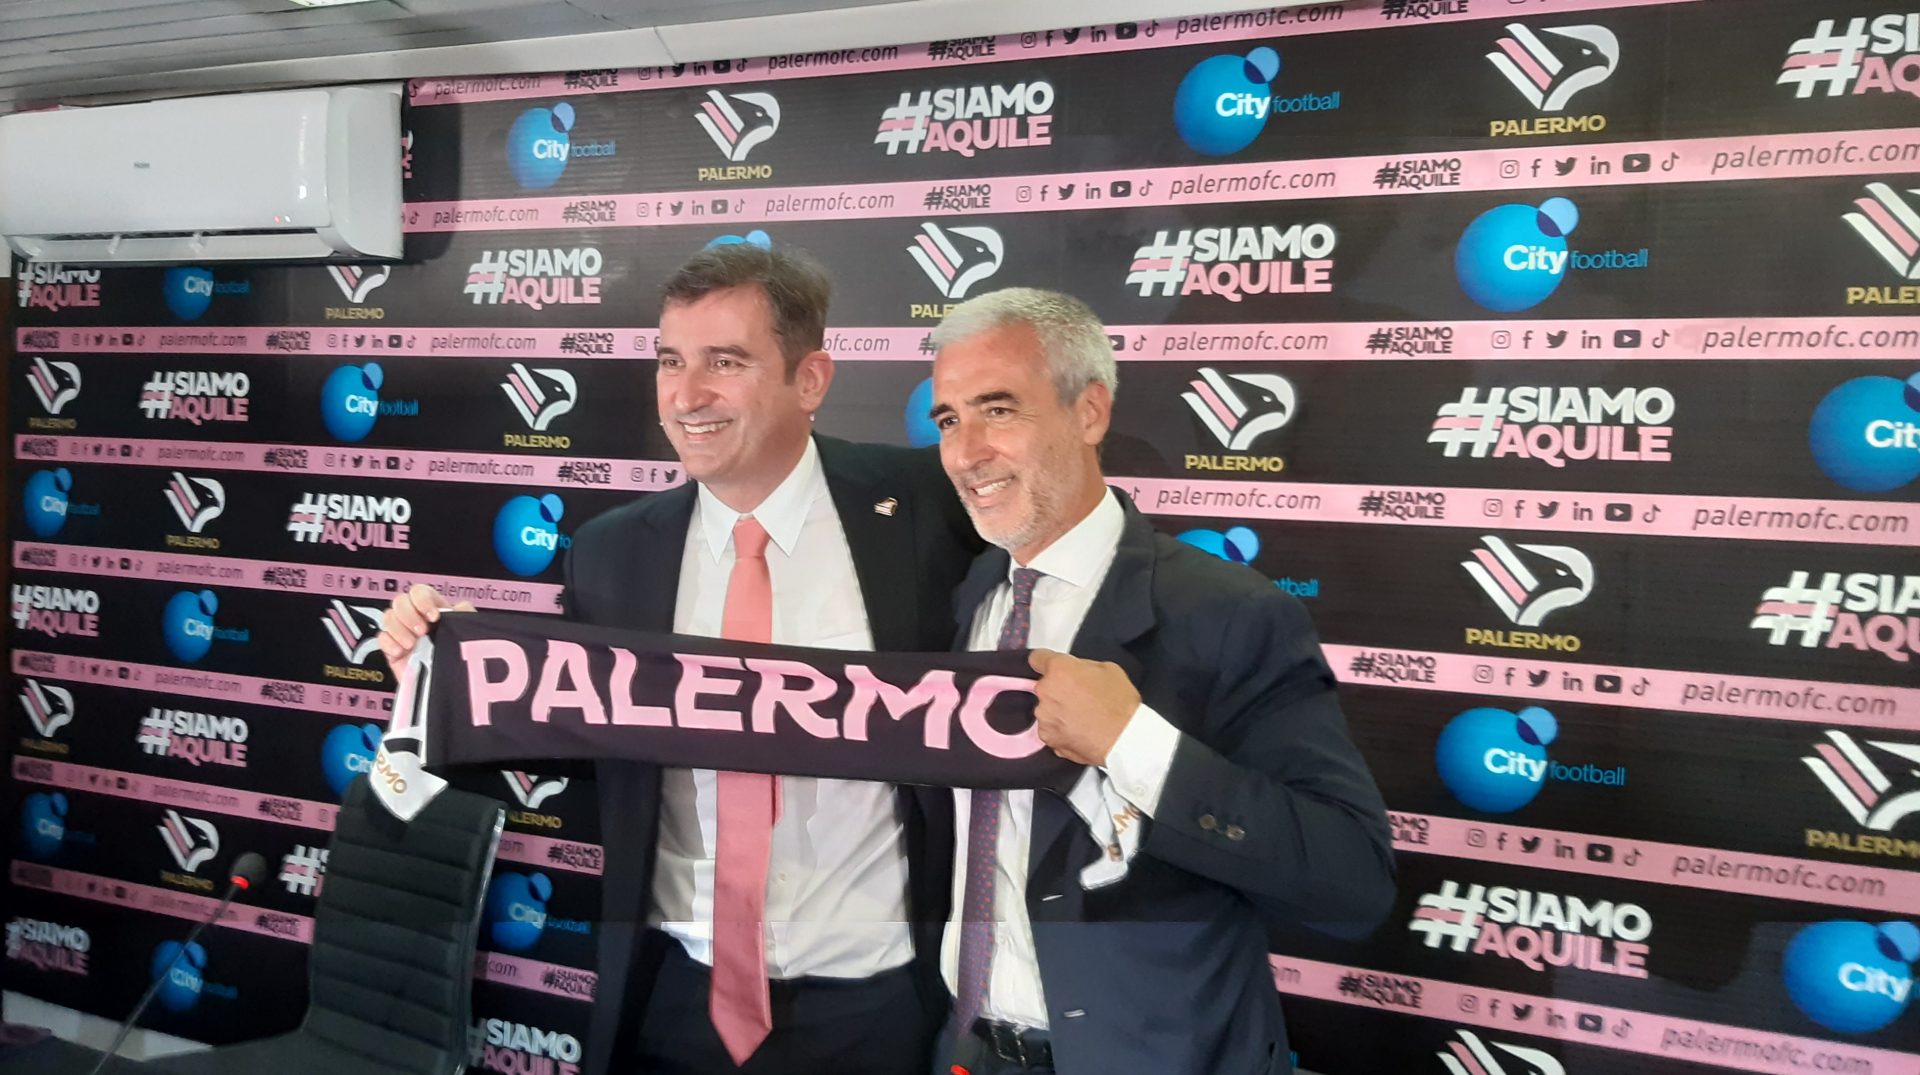 Il Palermo presenta le nuove maglie, Mirri: Un ponte tra passato e futuro